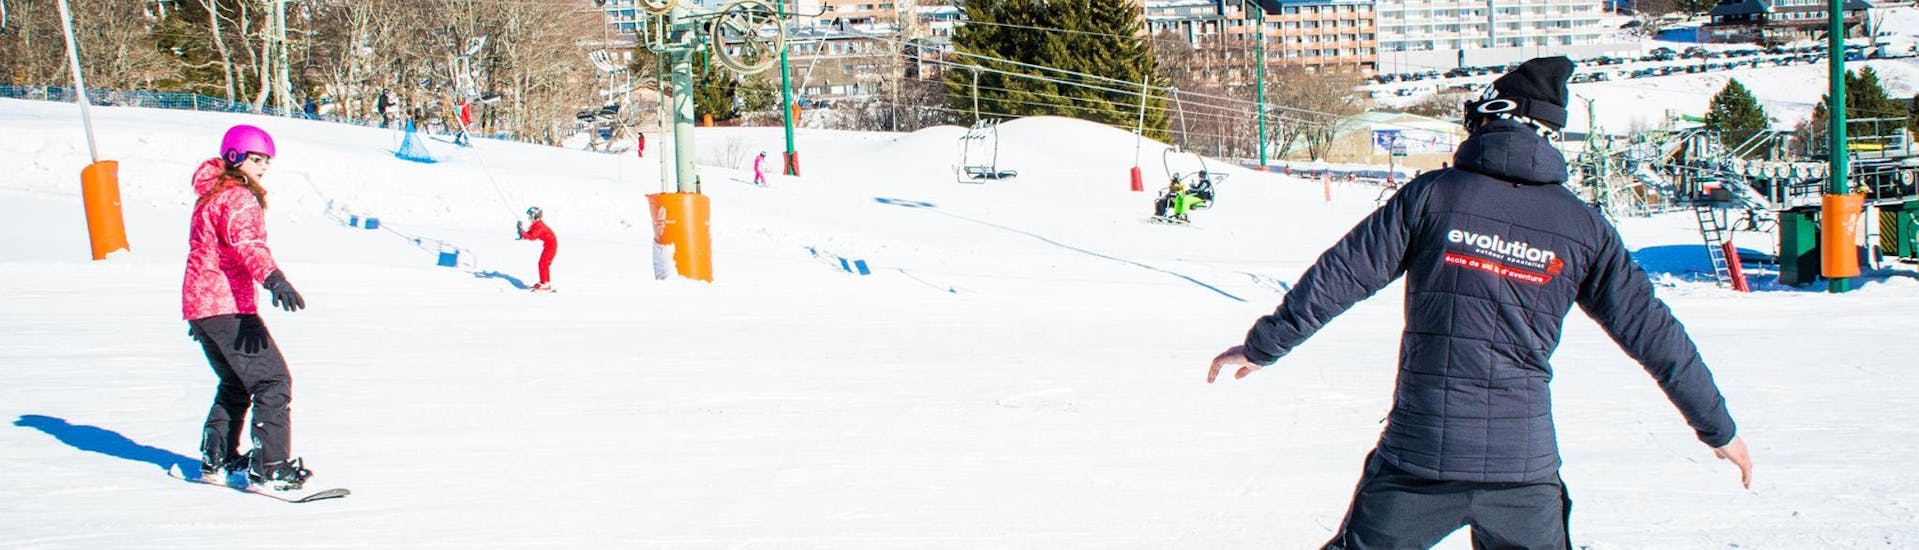 Un snowboardeur apprend les bases du snowboard avec l'aide de son moniteur de snowboard de l'école de ski Evolution 2 Super Besse pendant son Cours de snowboard pour Enfants (dès 8 ans) - 1er cours.